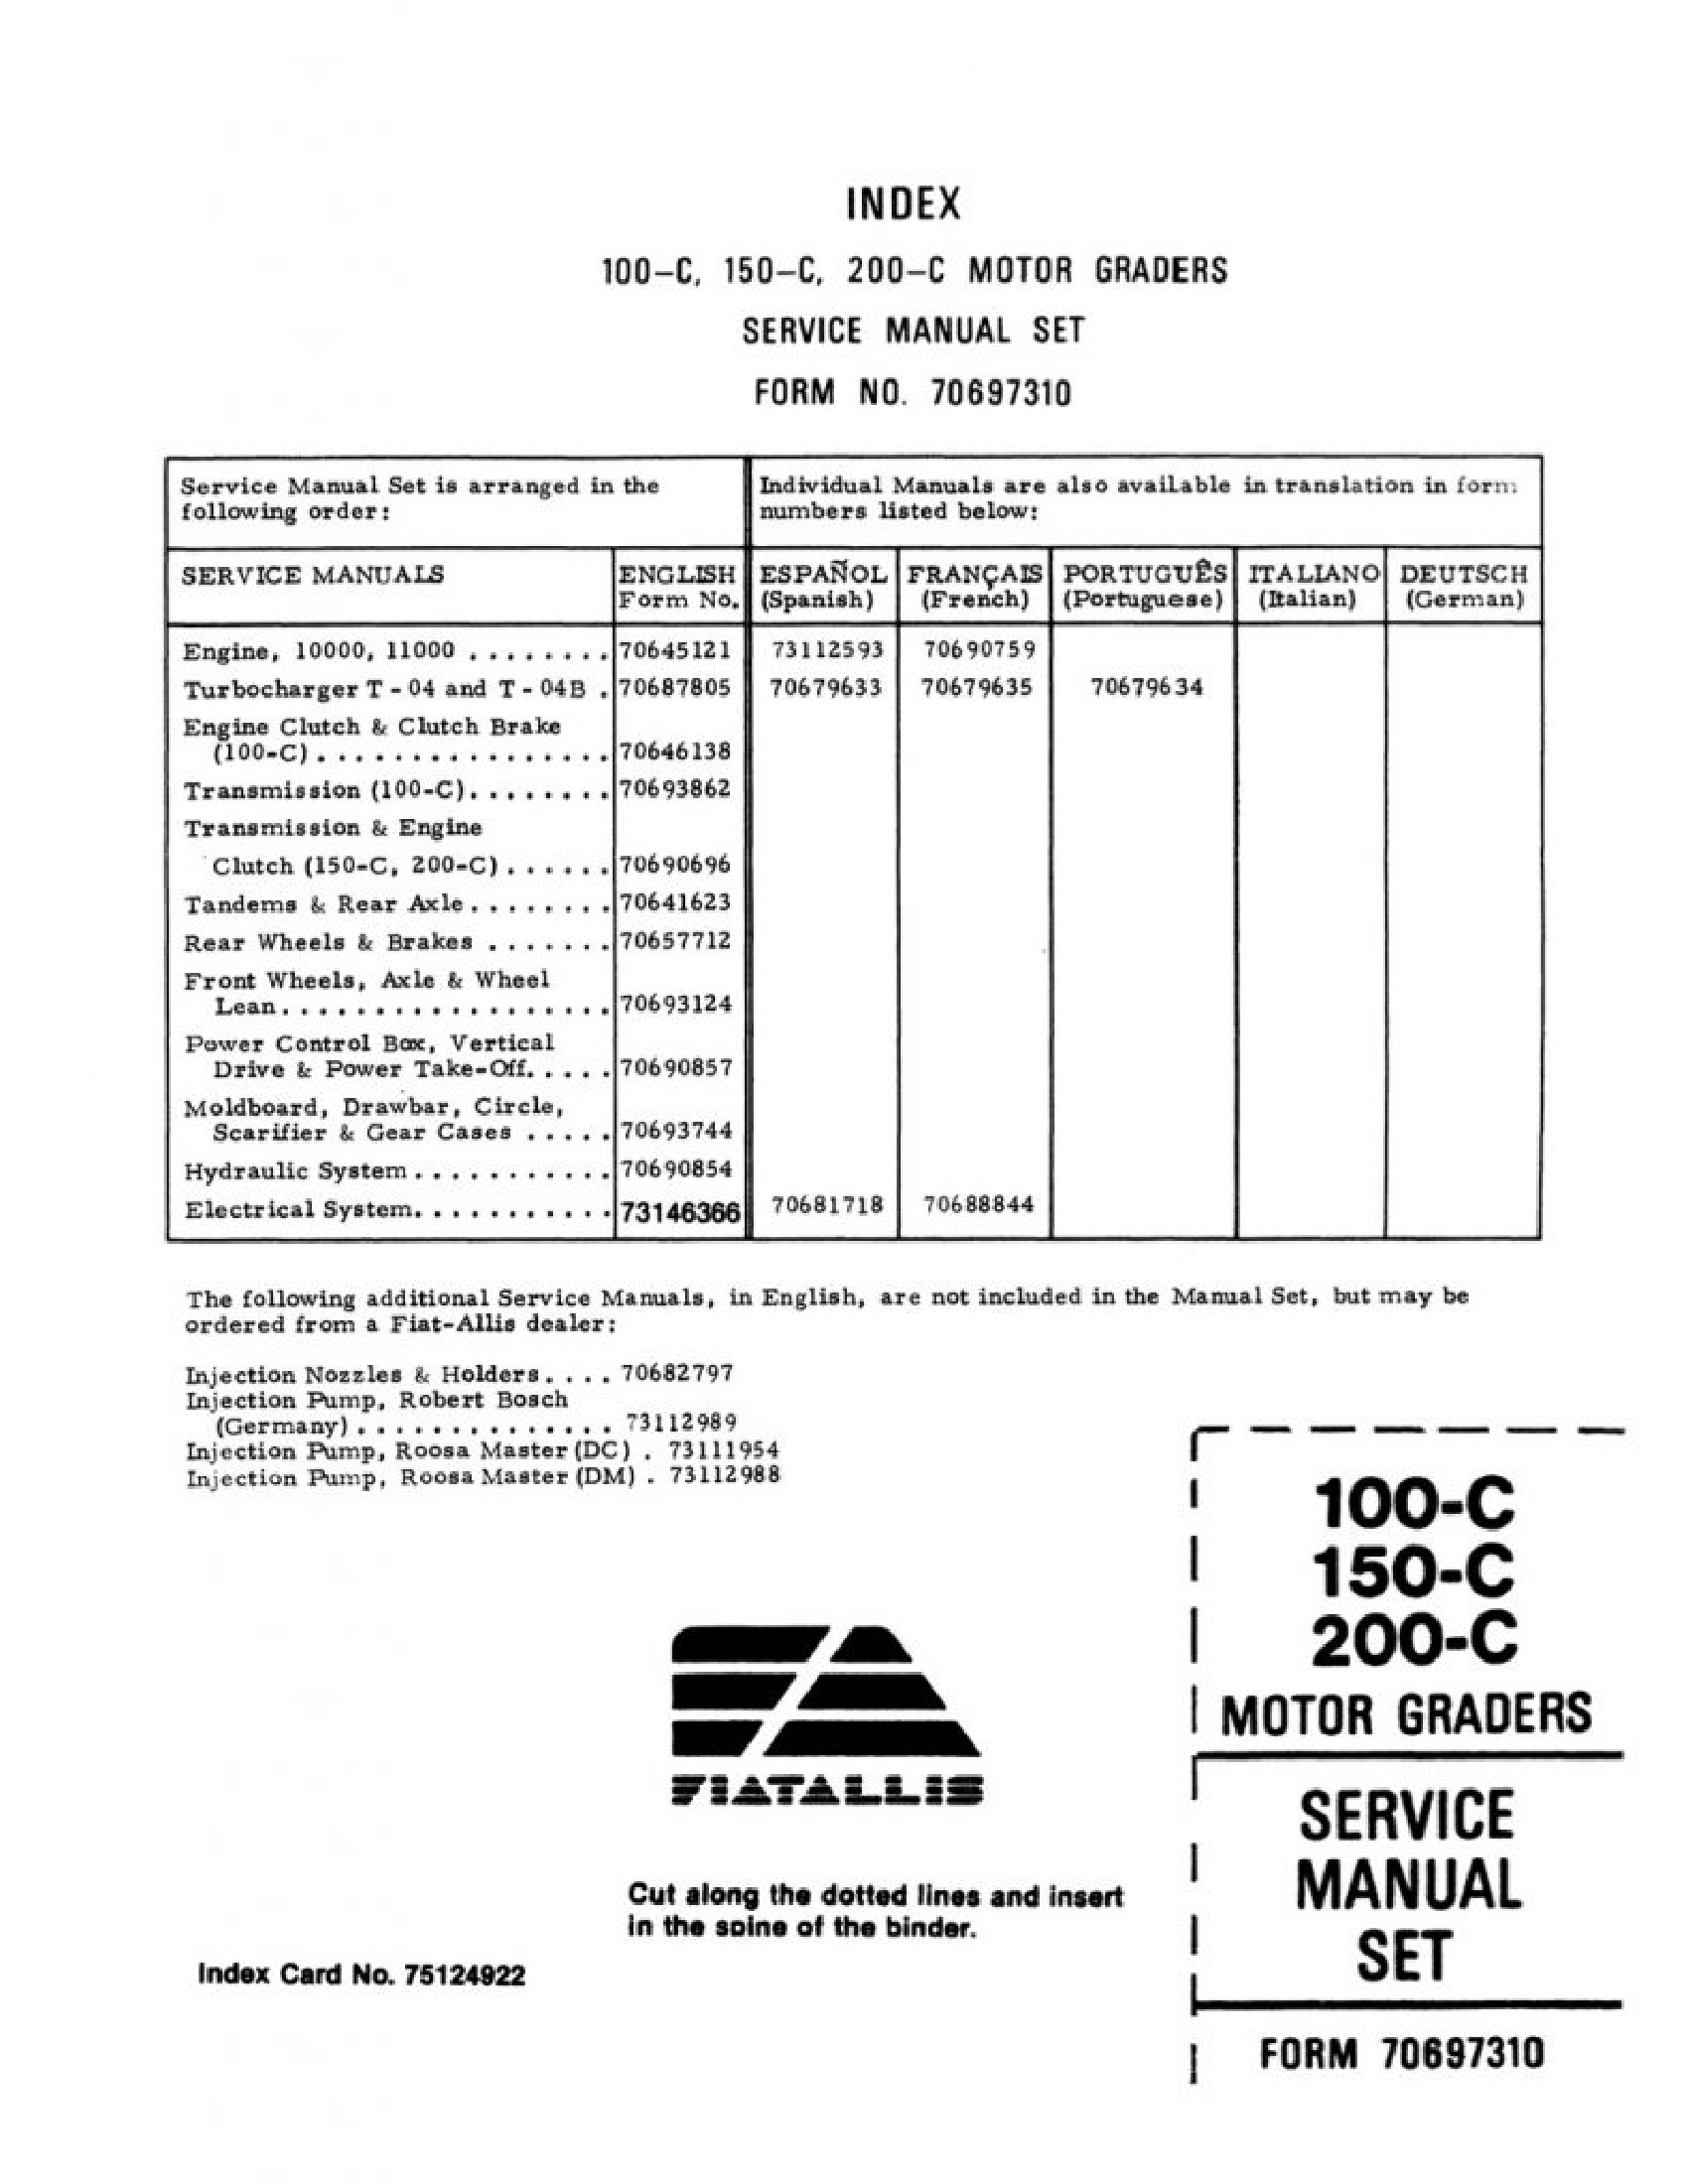 Fiat-Allis 100-C Motor Grader manual